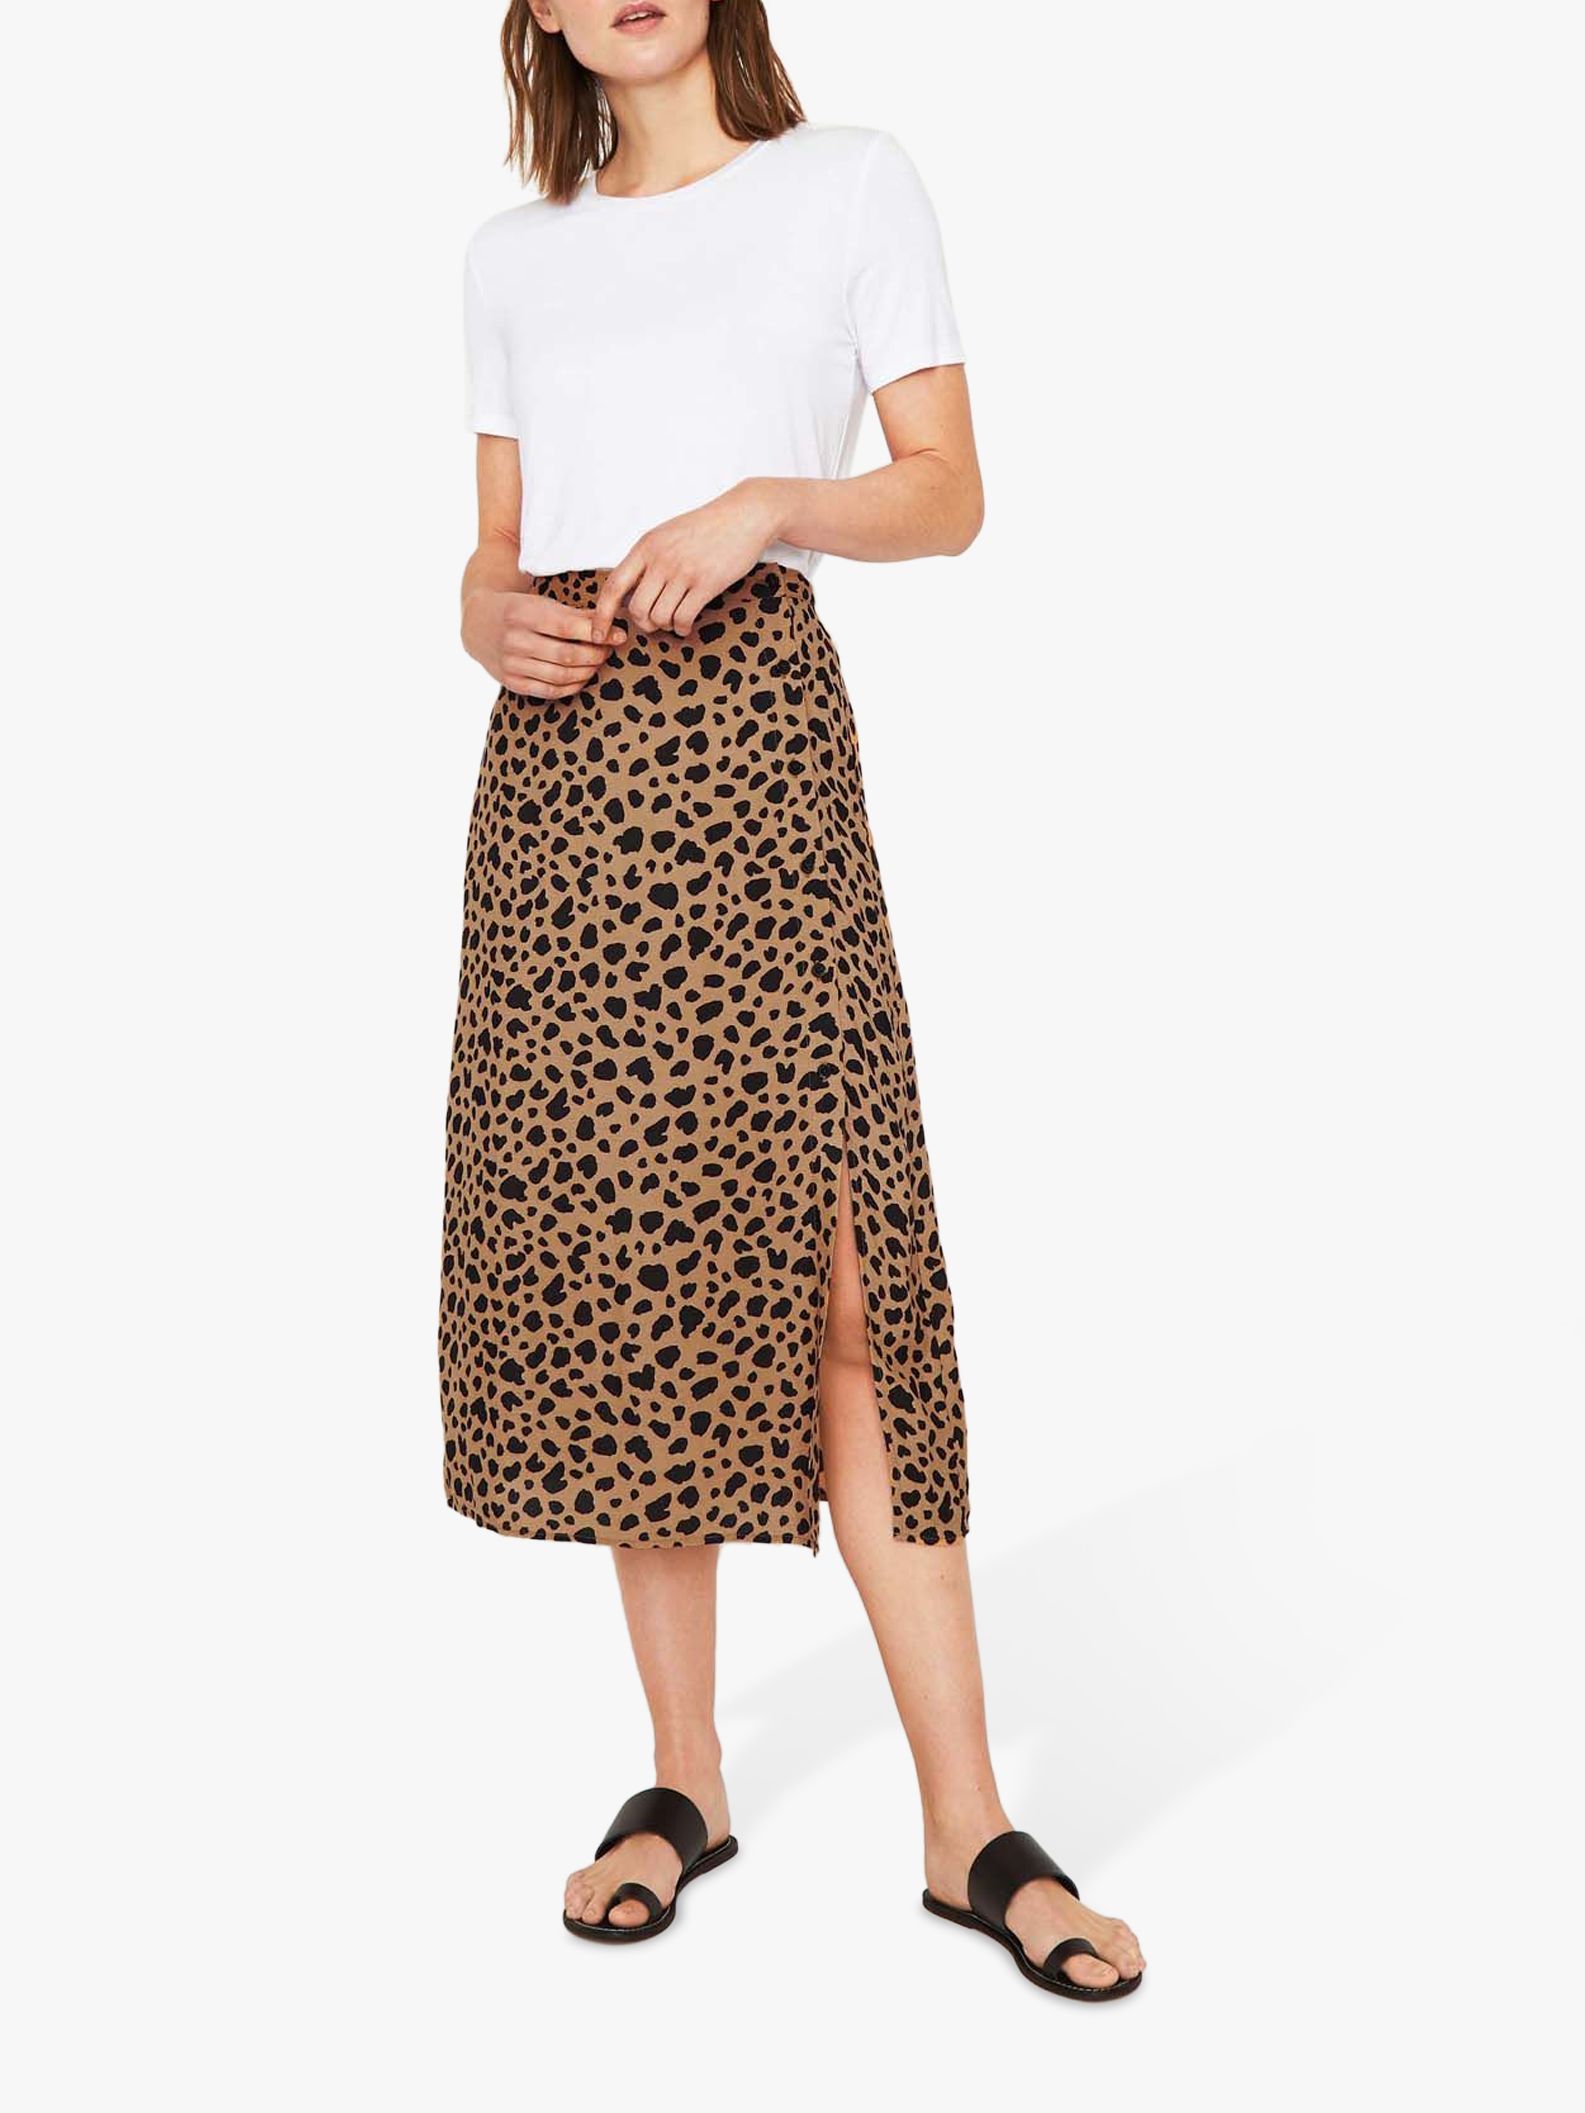 animal print skirt with split